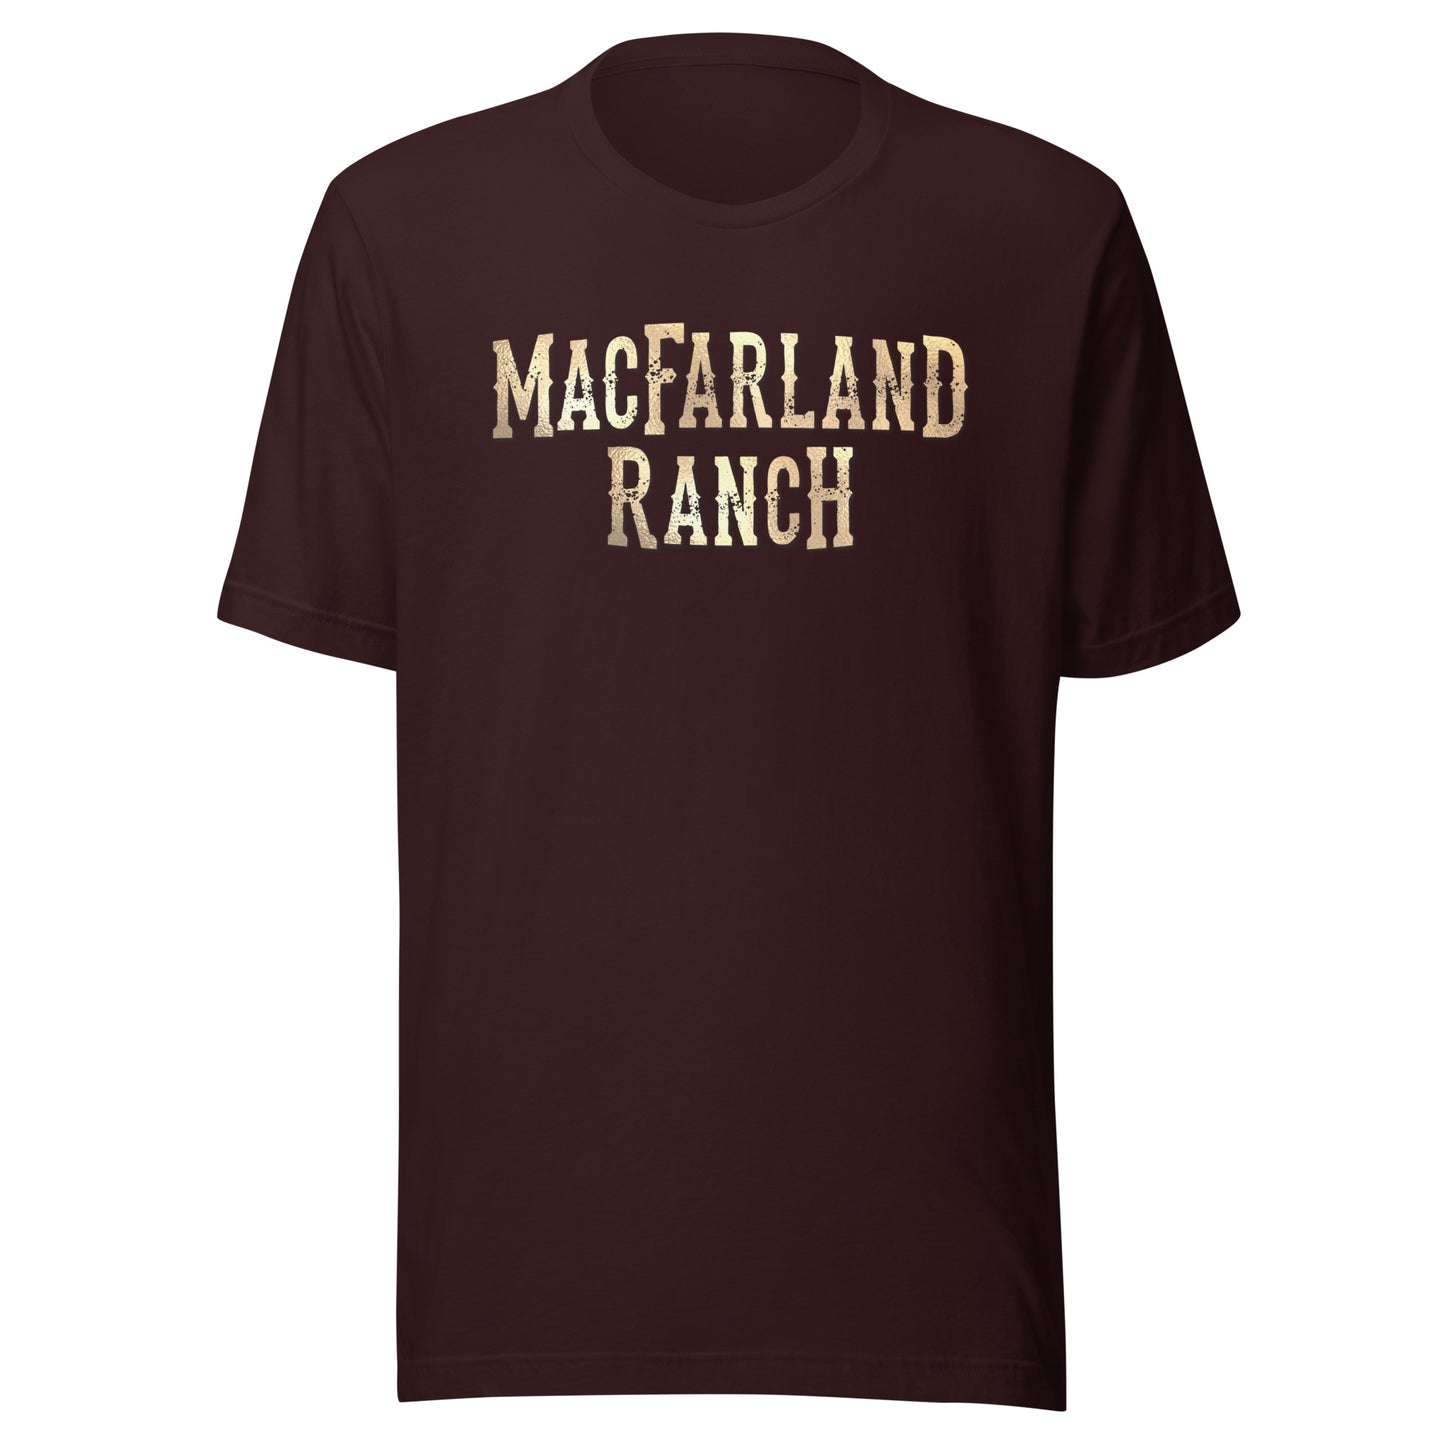 MacFarland Ranch Short-Sleeve Unisex T-Shirt